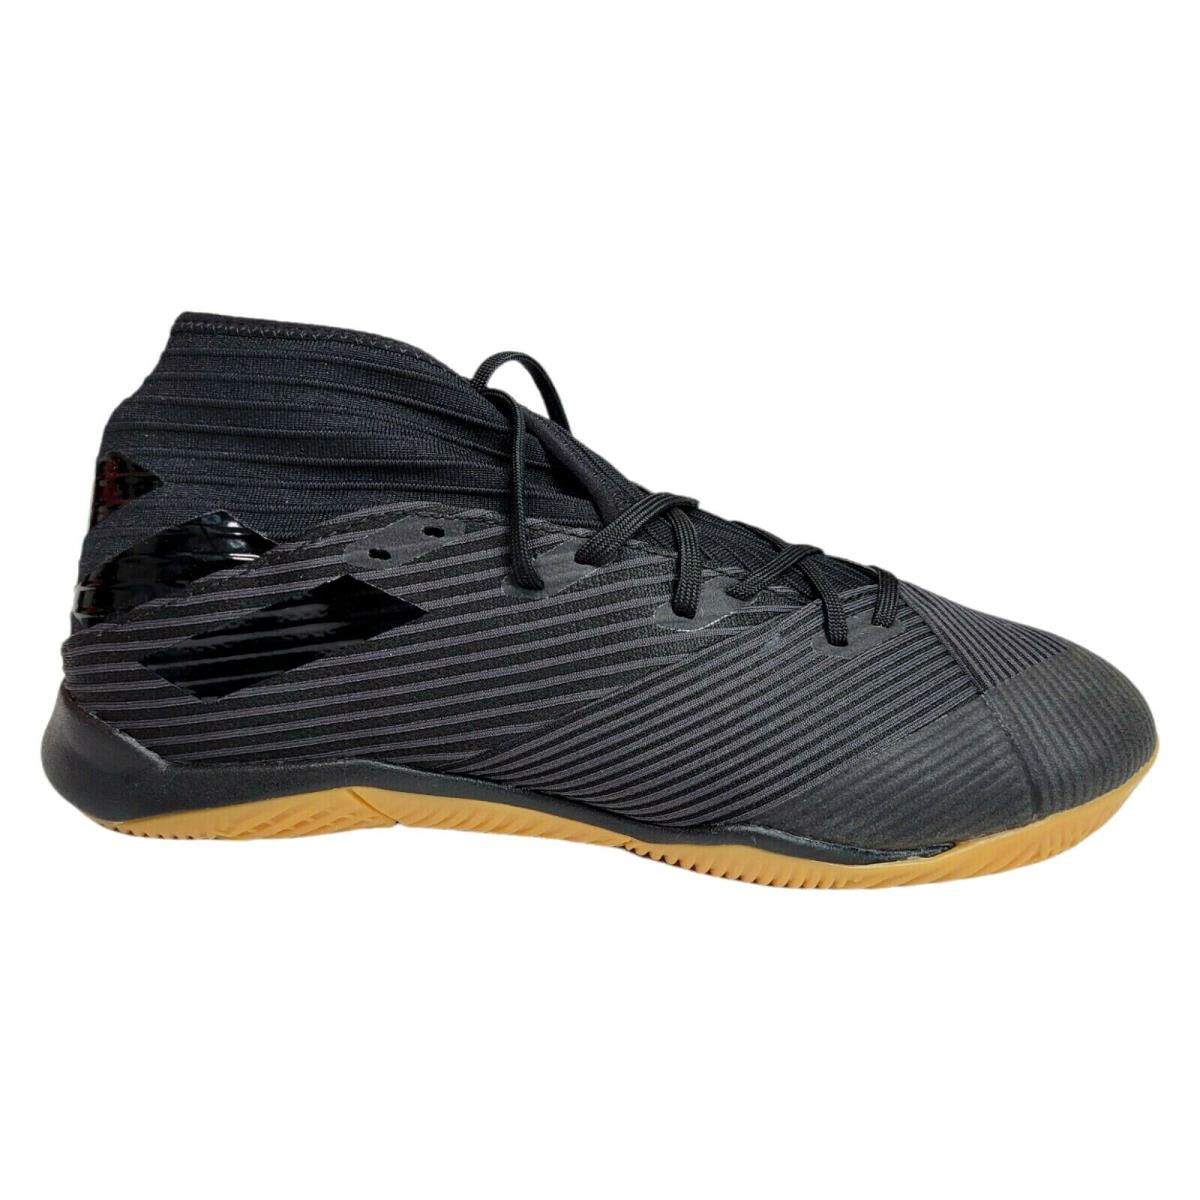 Adidas Mens Nemeziz 19.3 Indoor Soccer Cleats Shoes Boot Core Black Gum F34413